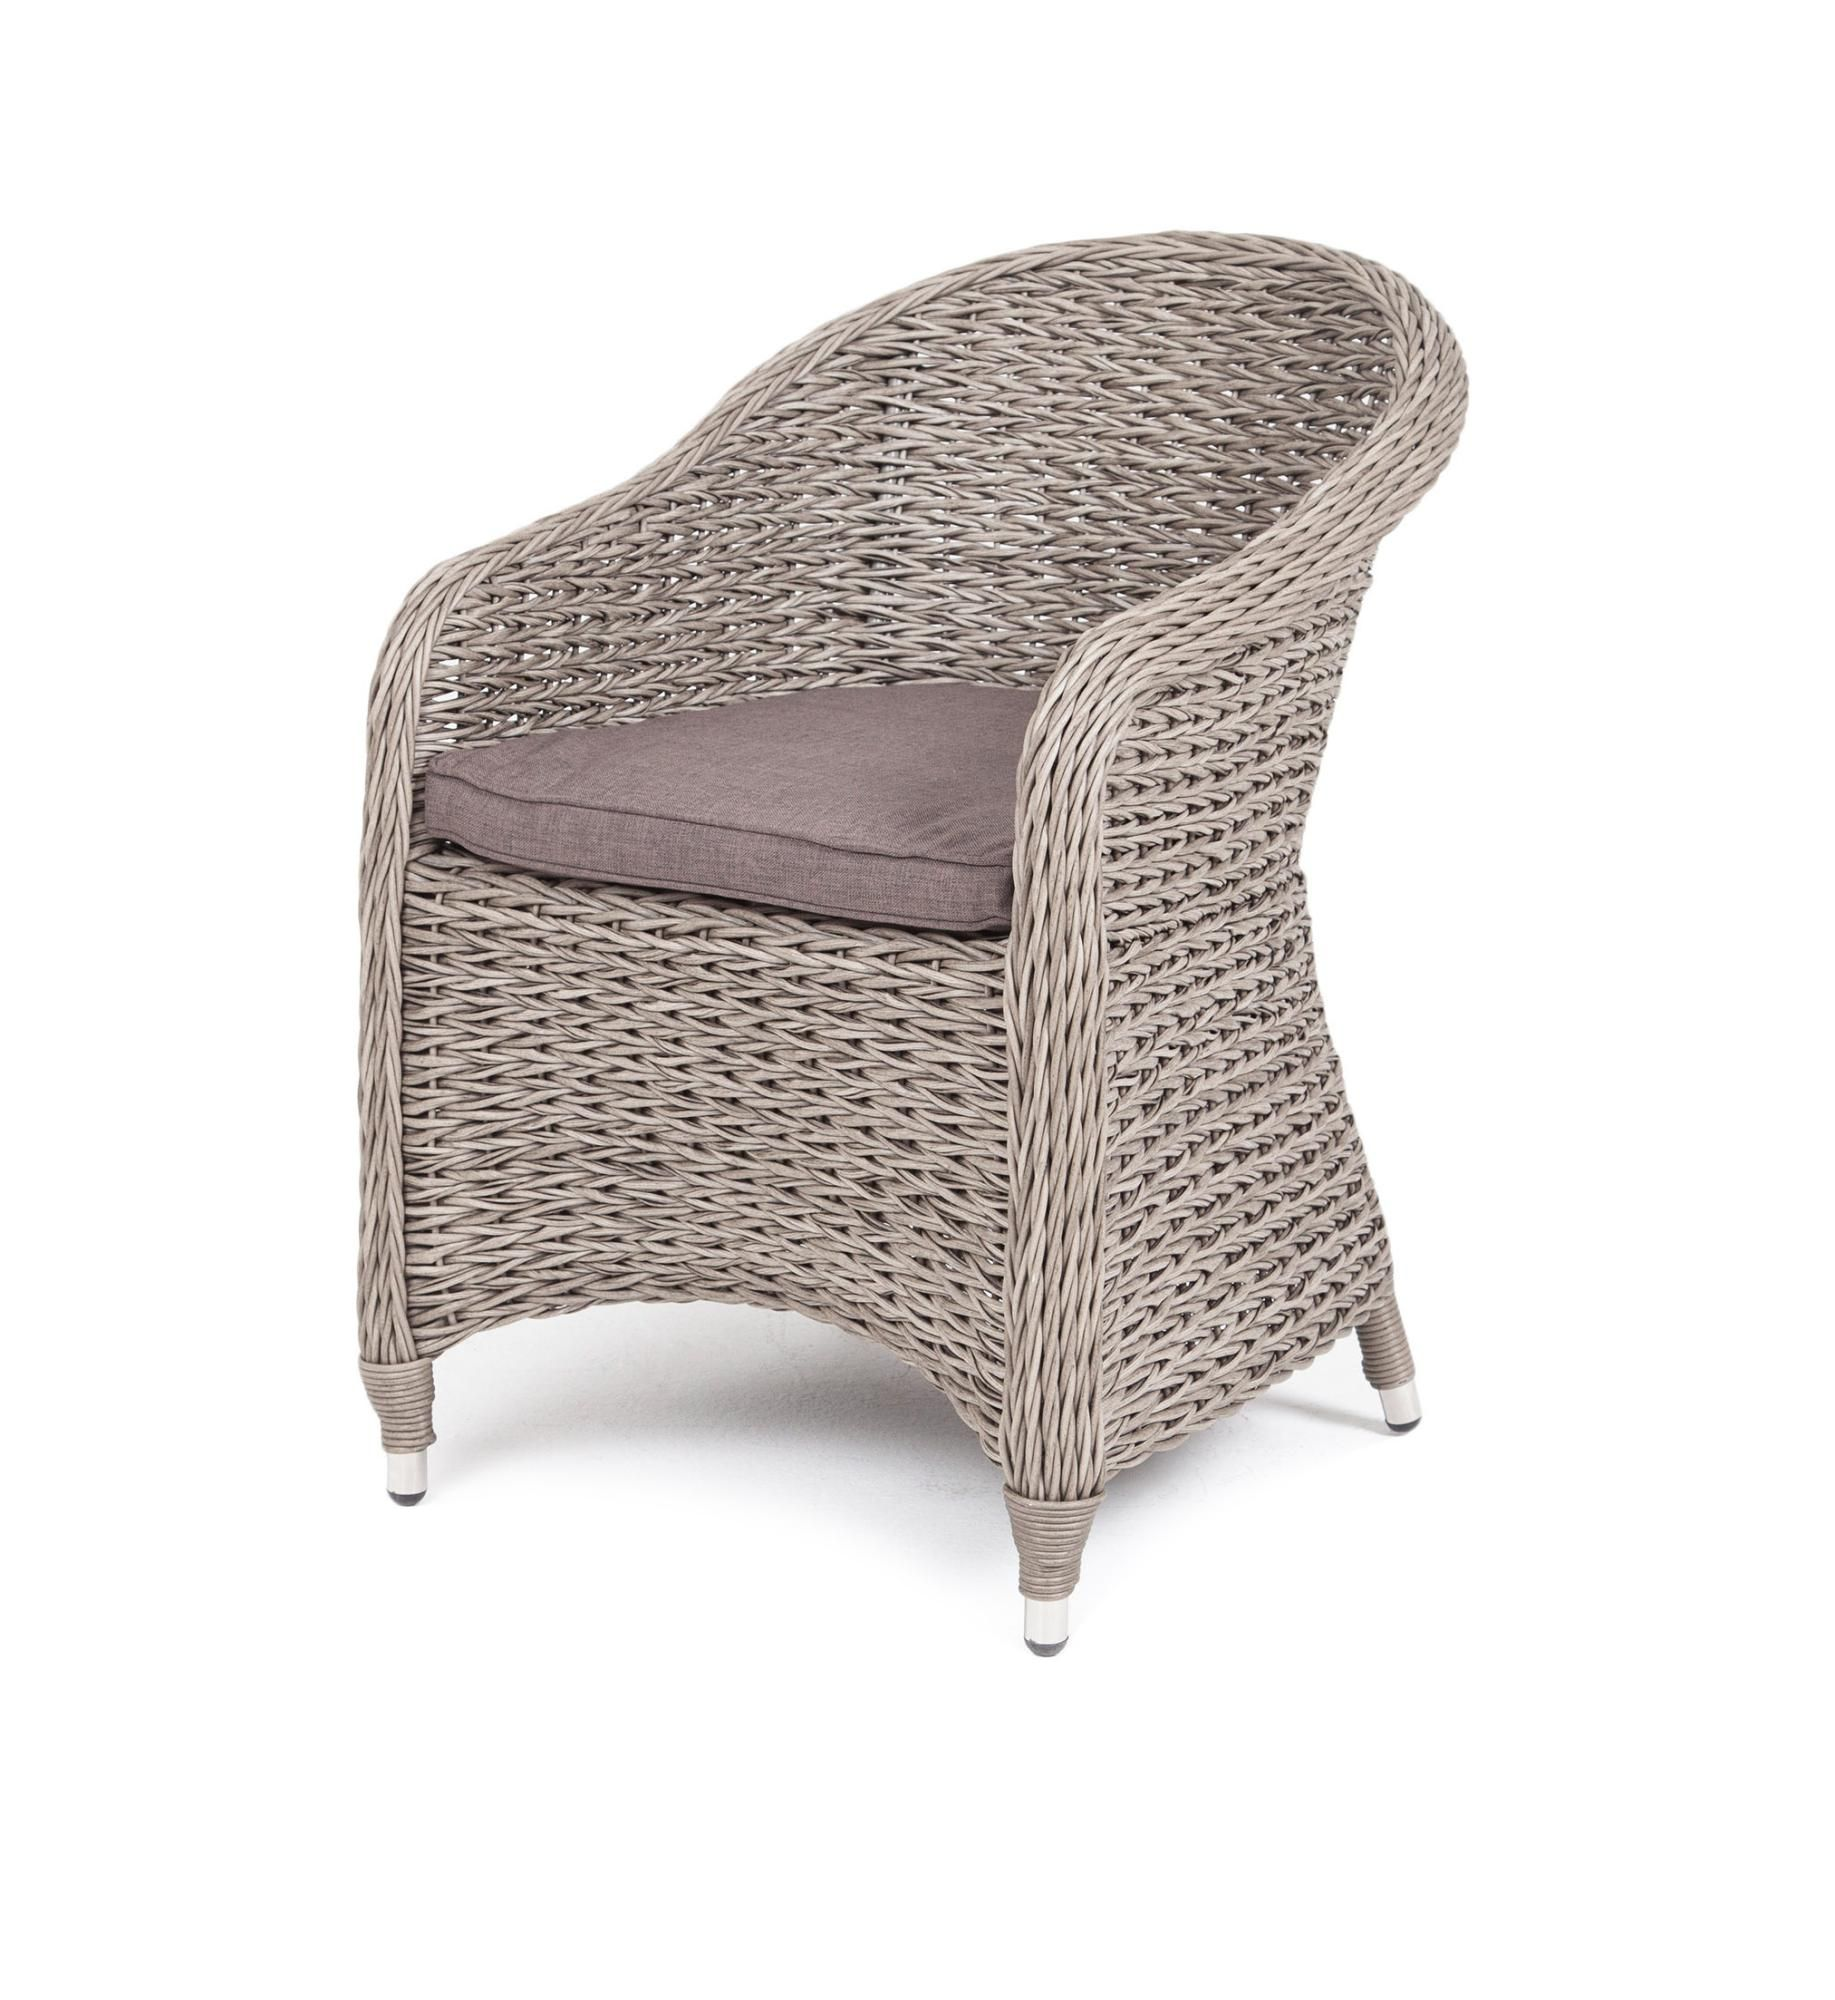 Плетеное кресло Равенна гиацинт серый плетеное кресло равенна коричневое с белой подушкой